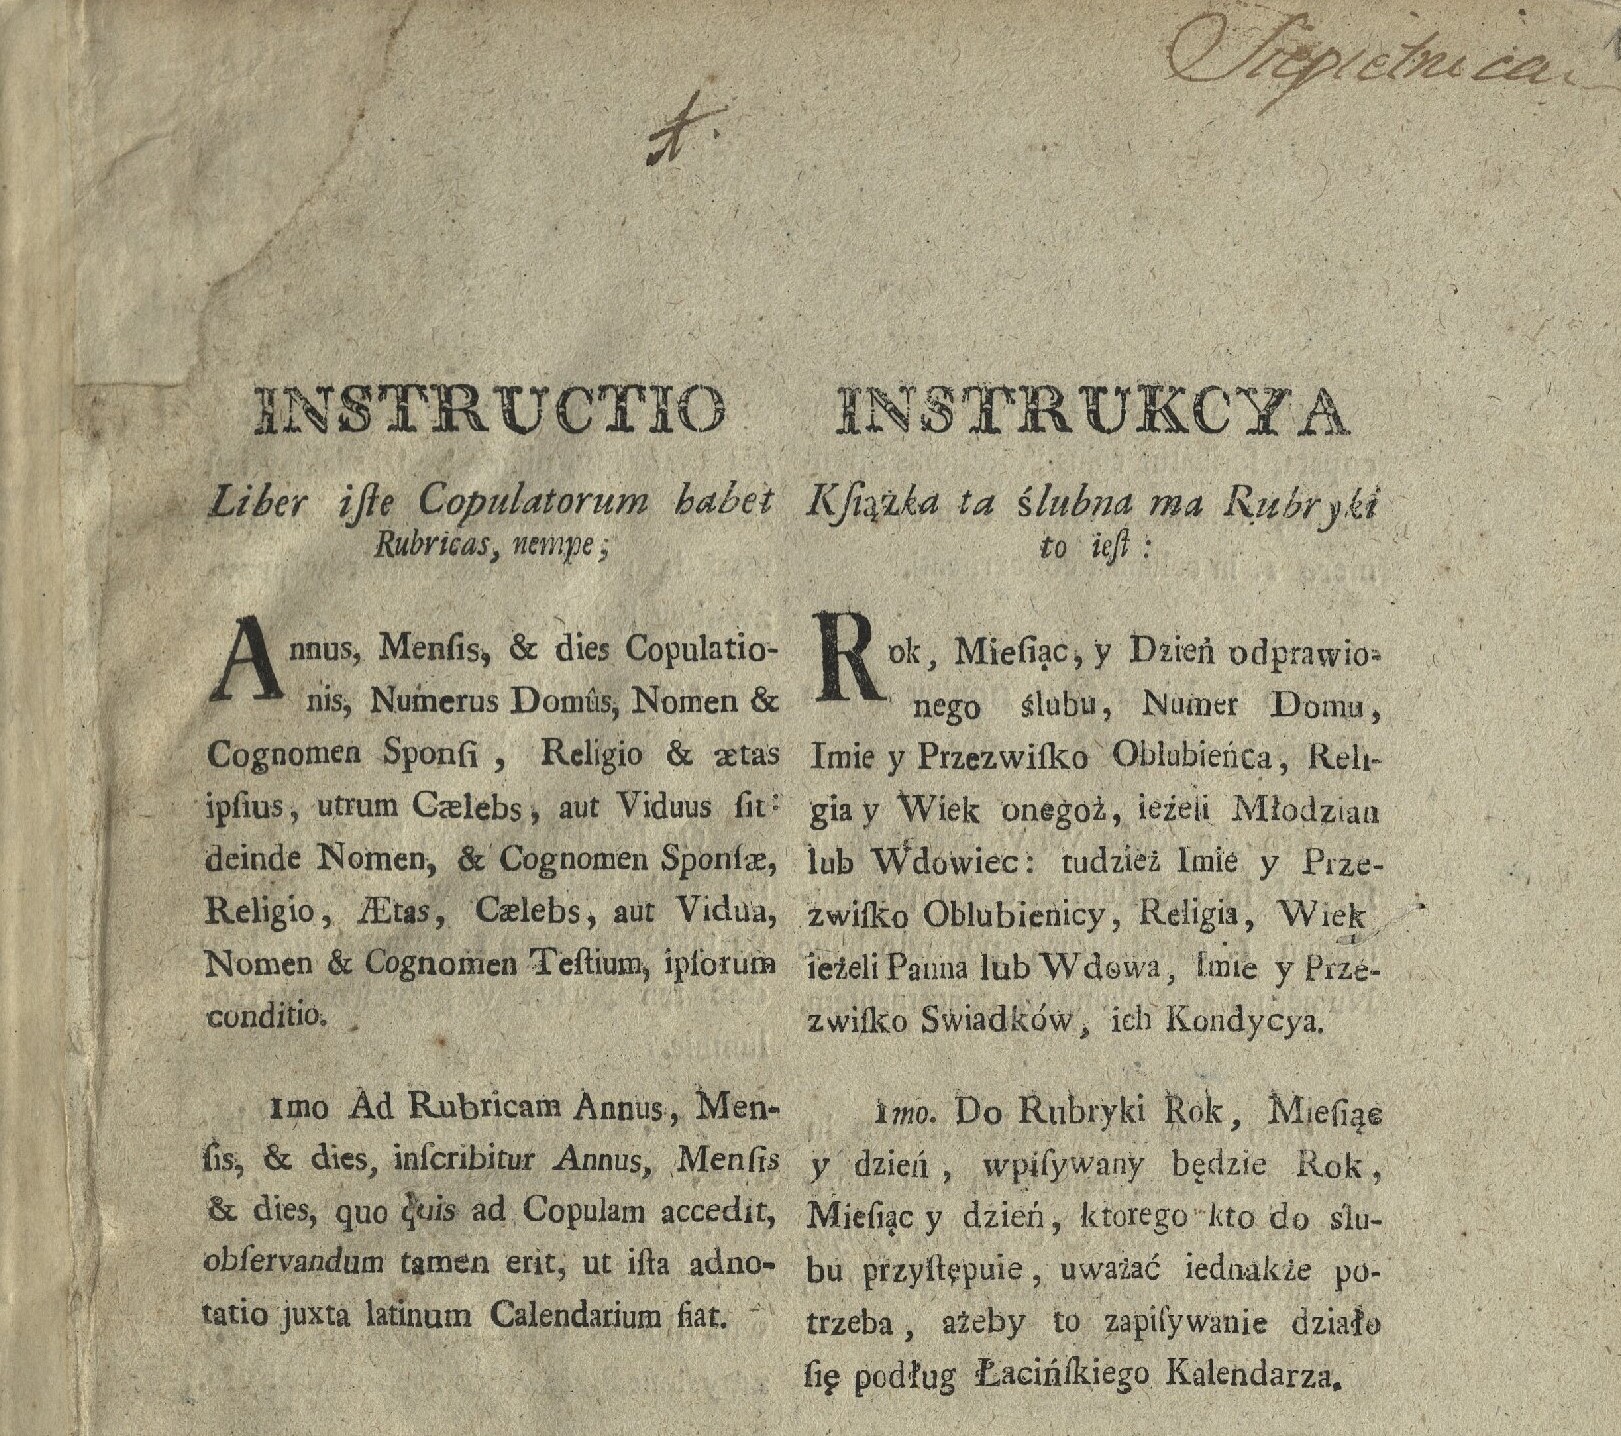 Zdjęcie pierwszej strony jednej z ksiąg metrykalnych, z wydrukowaną w języku polskim i po łacinie instrukcją ich wypełniania.